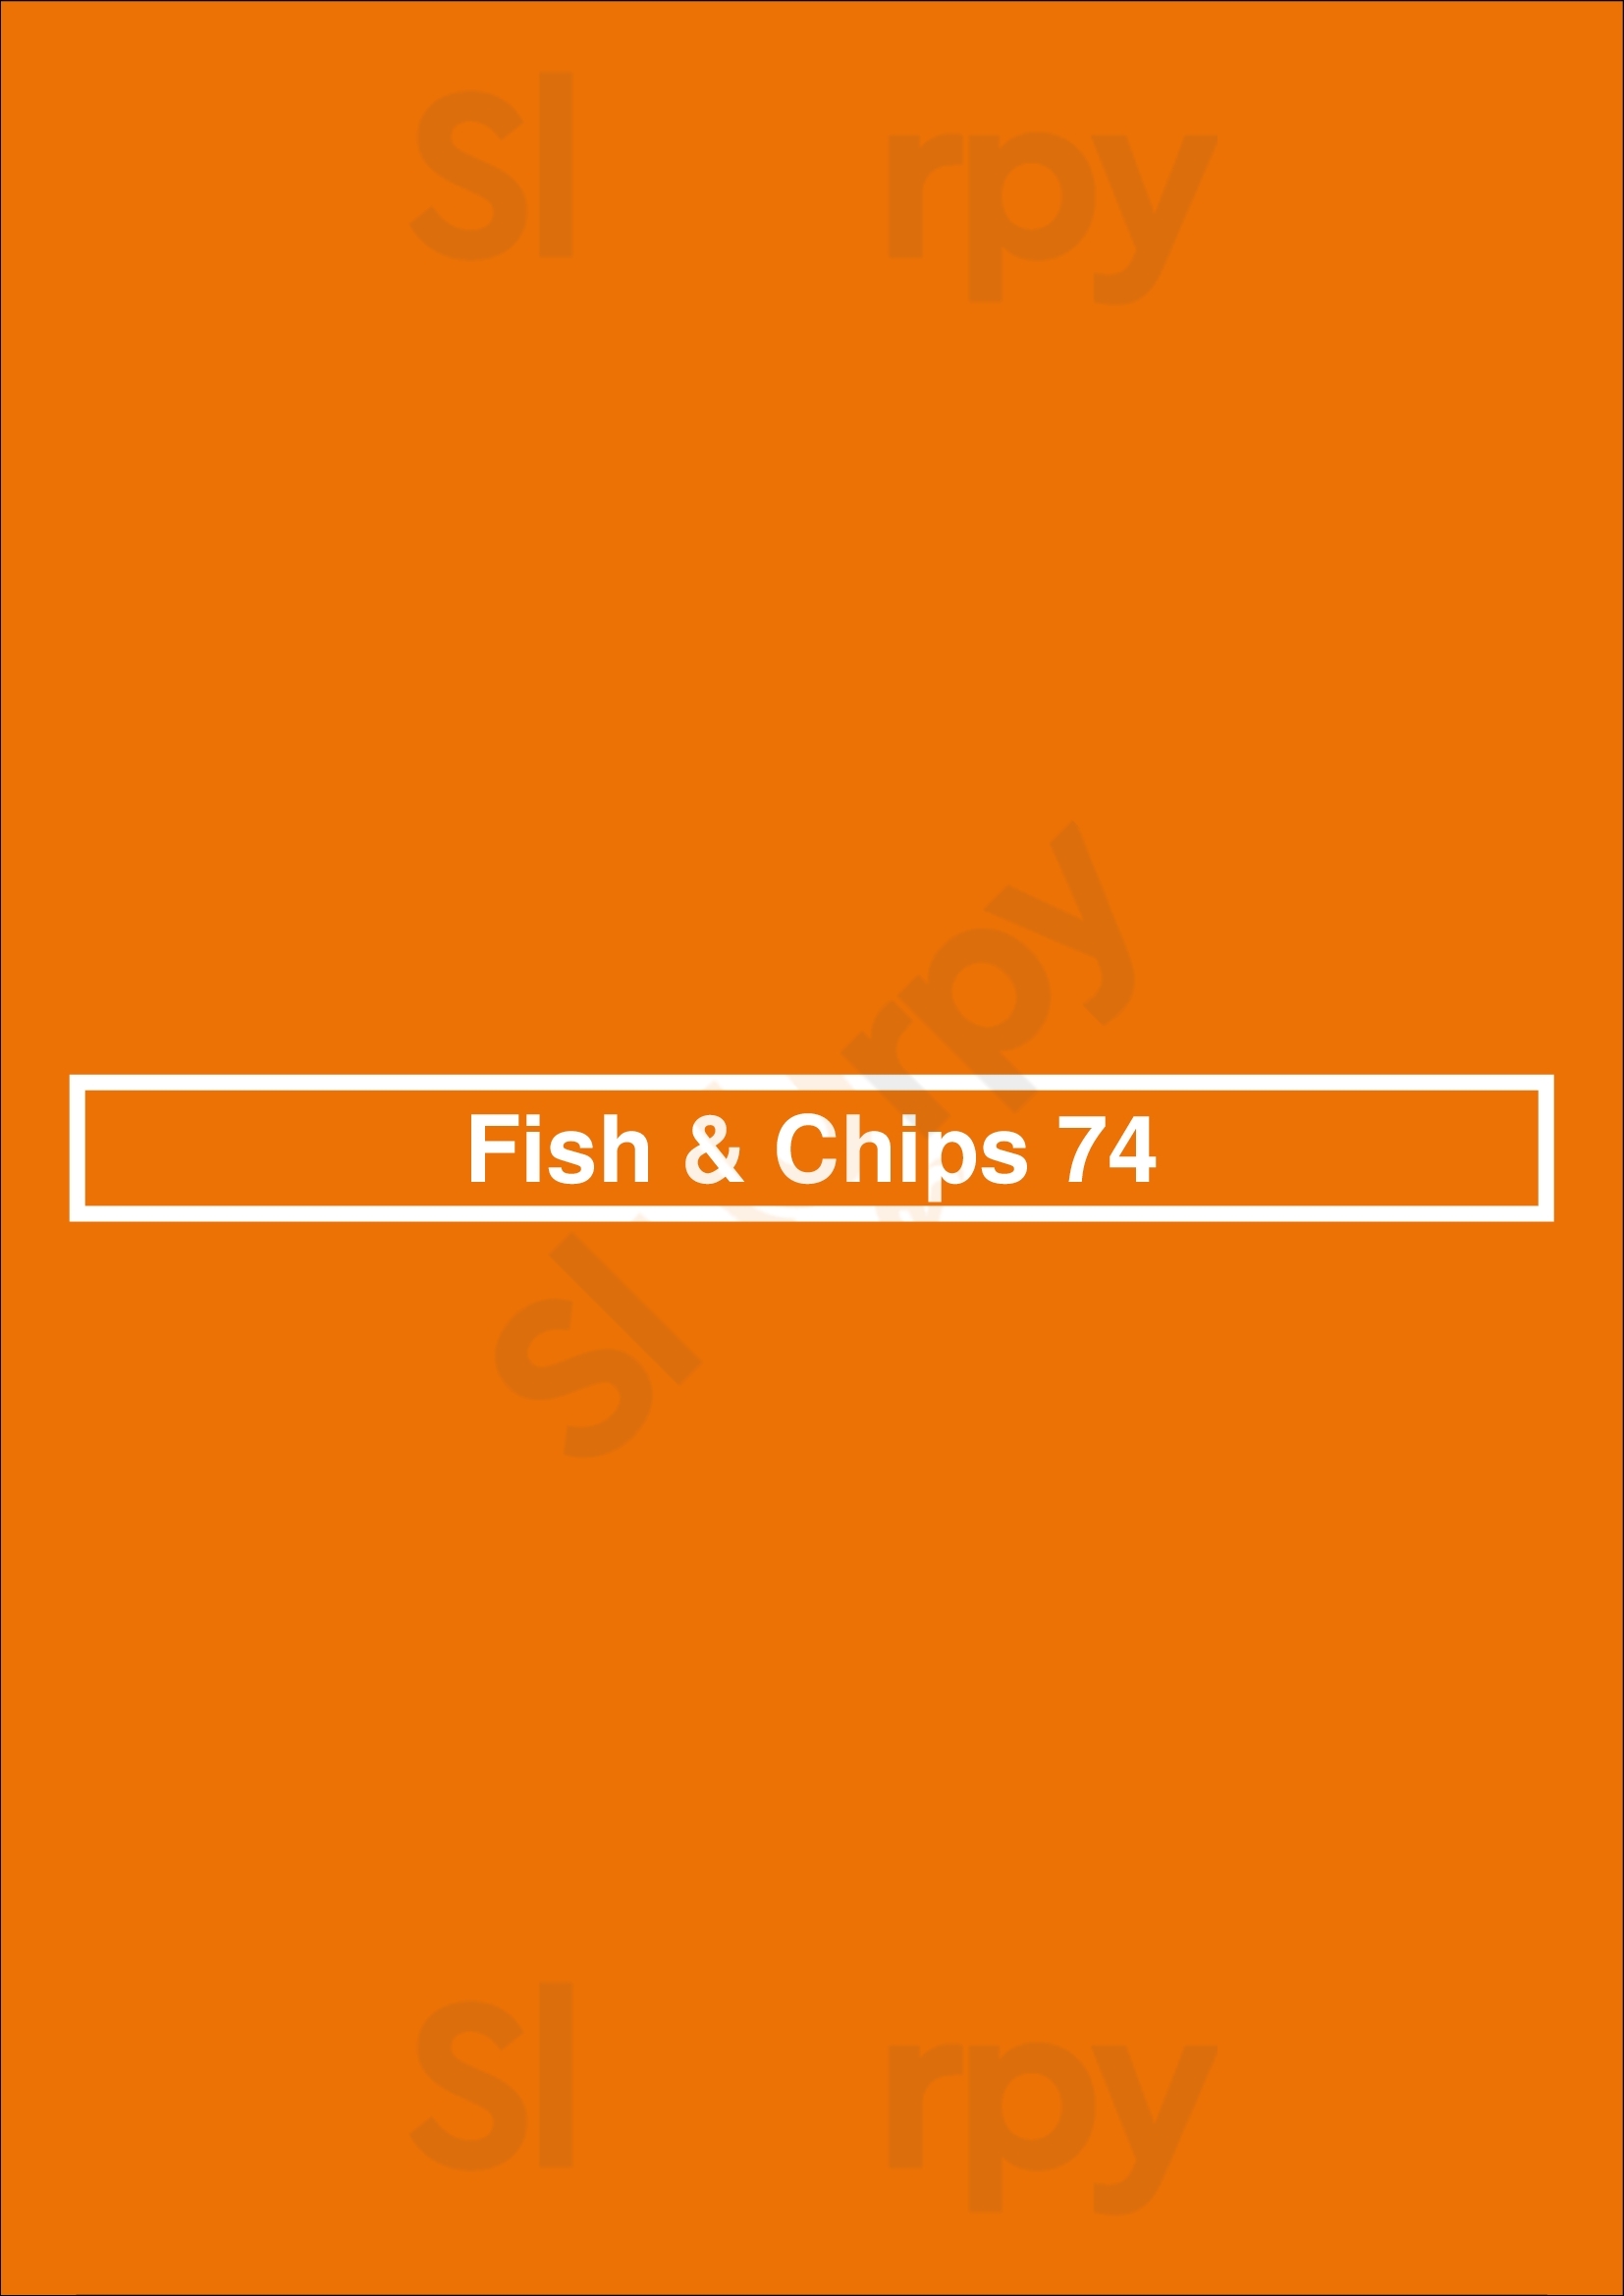 Fish & Chips 74 Worthing Menu - 1